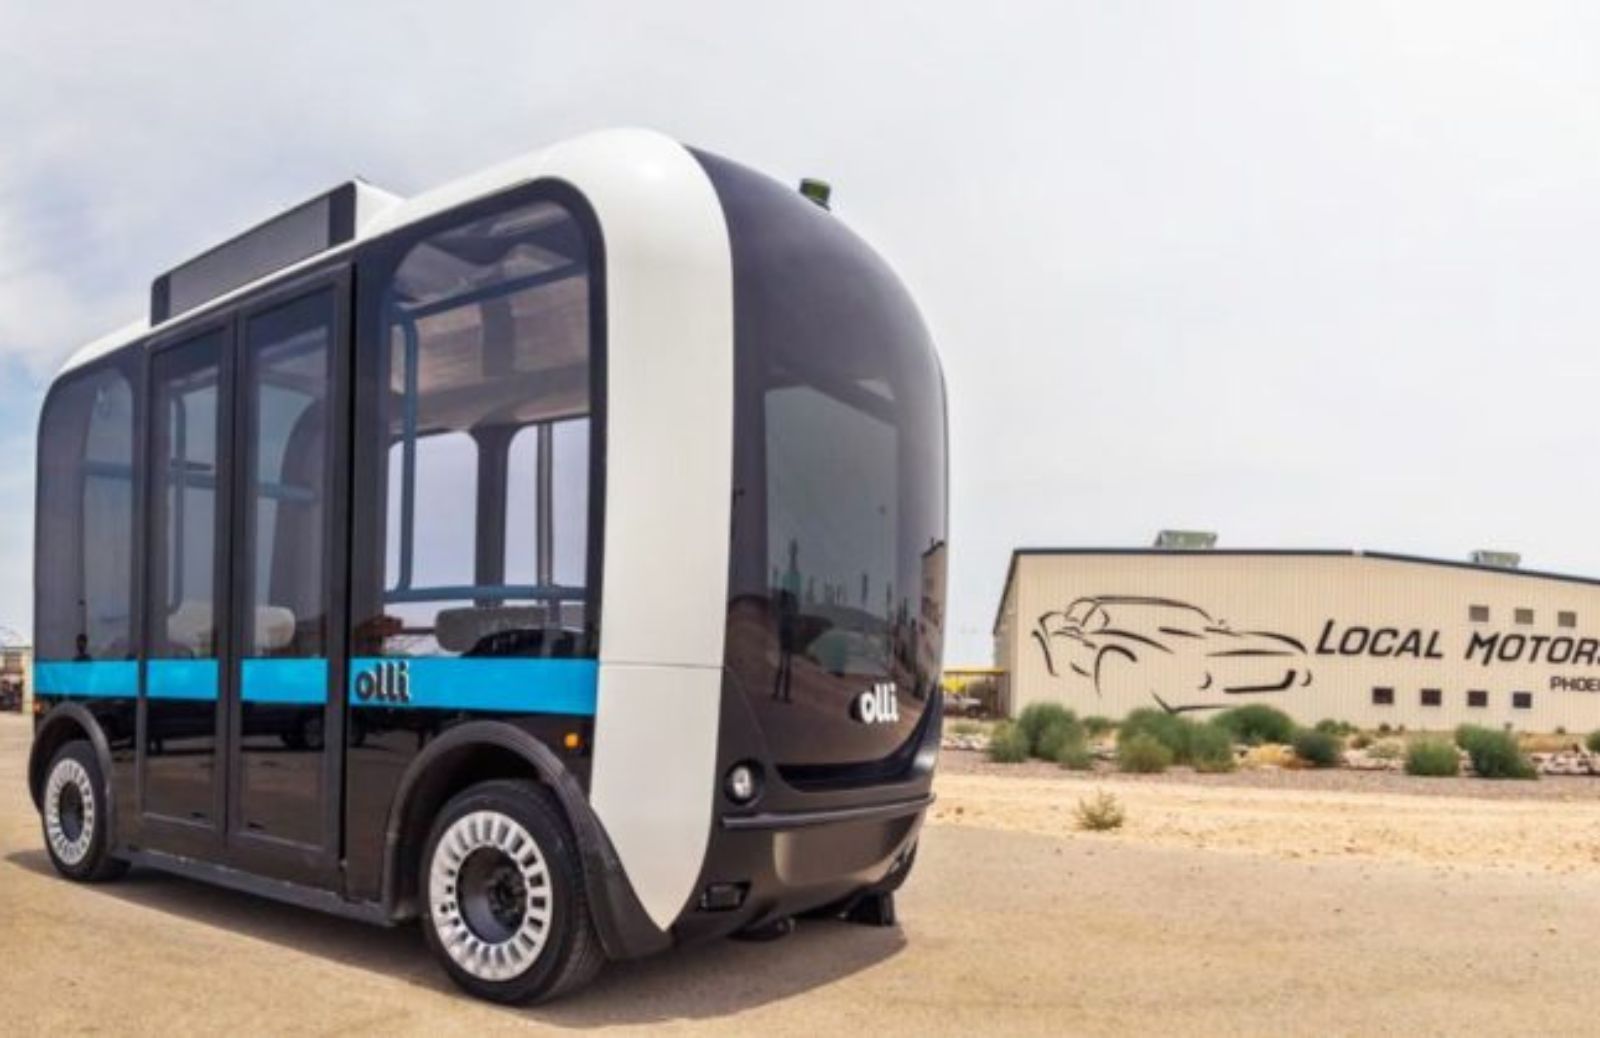 Olli, il bus stampato in 3D che si guida da solo